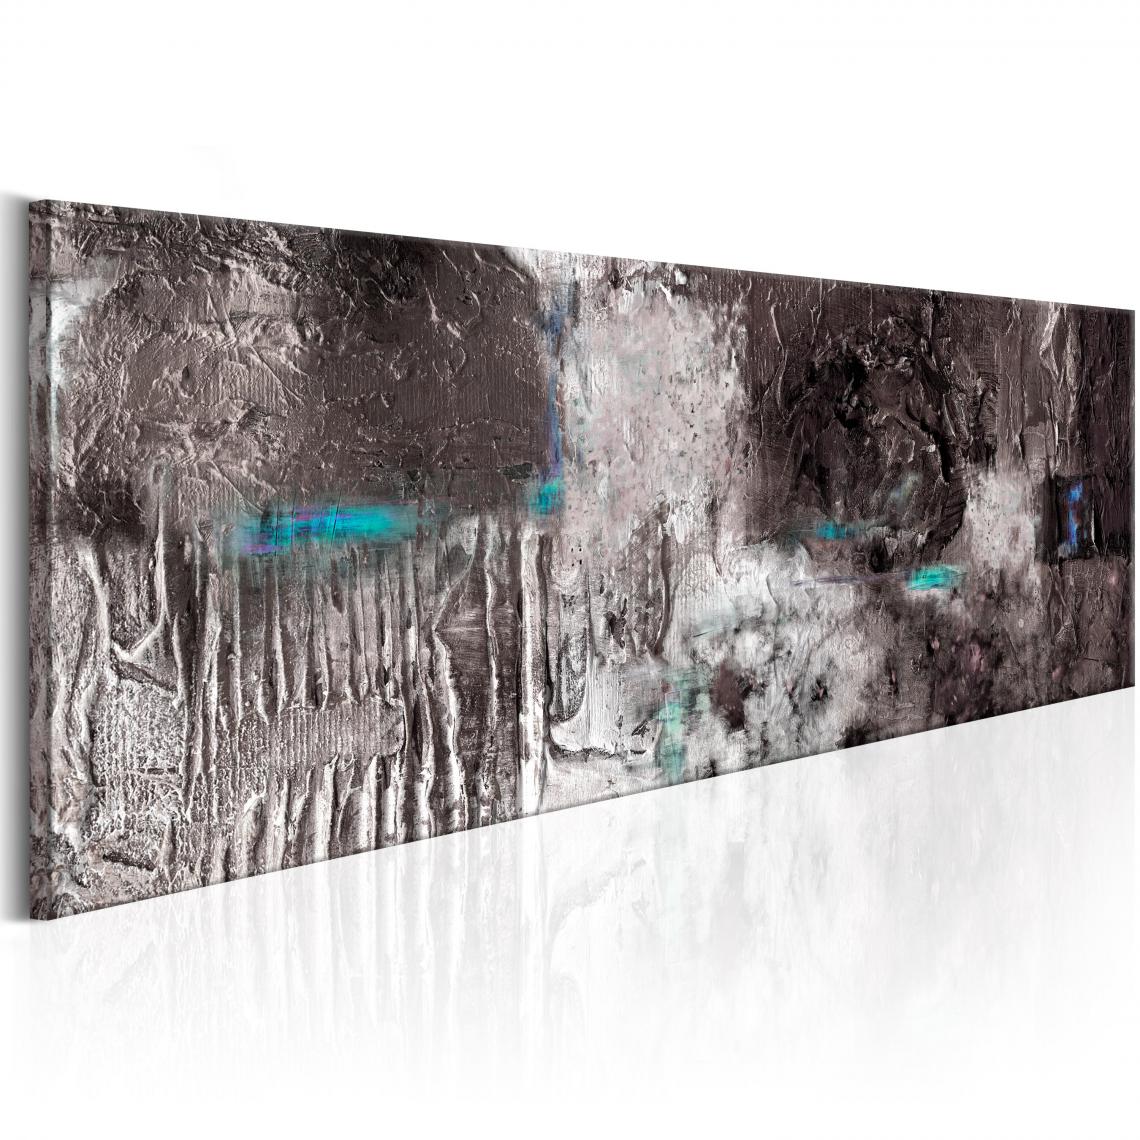 Decoshop26 - Tableau sur toile décoration murale image imprimée cadre en bois à suspendre Machine d'argent 120x40 cm 11_0001256 - Tableaux, peintures